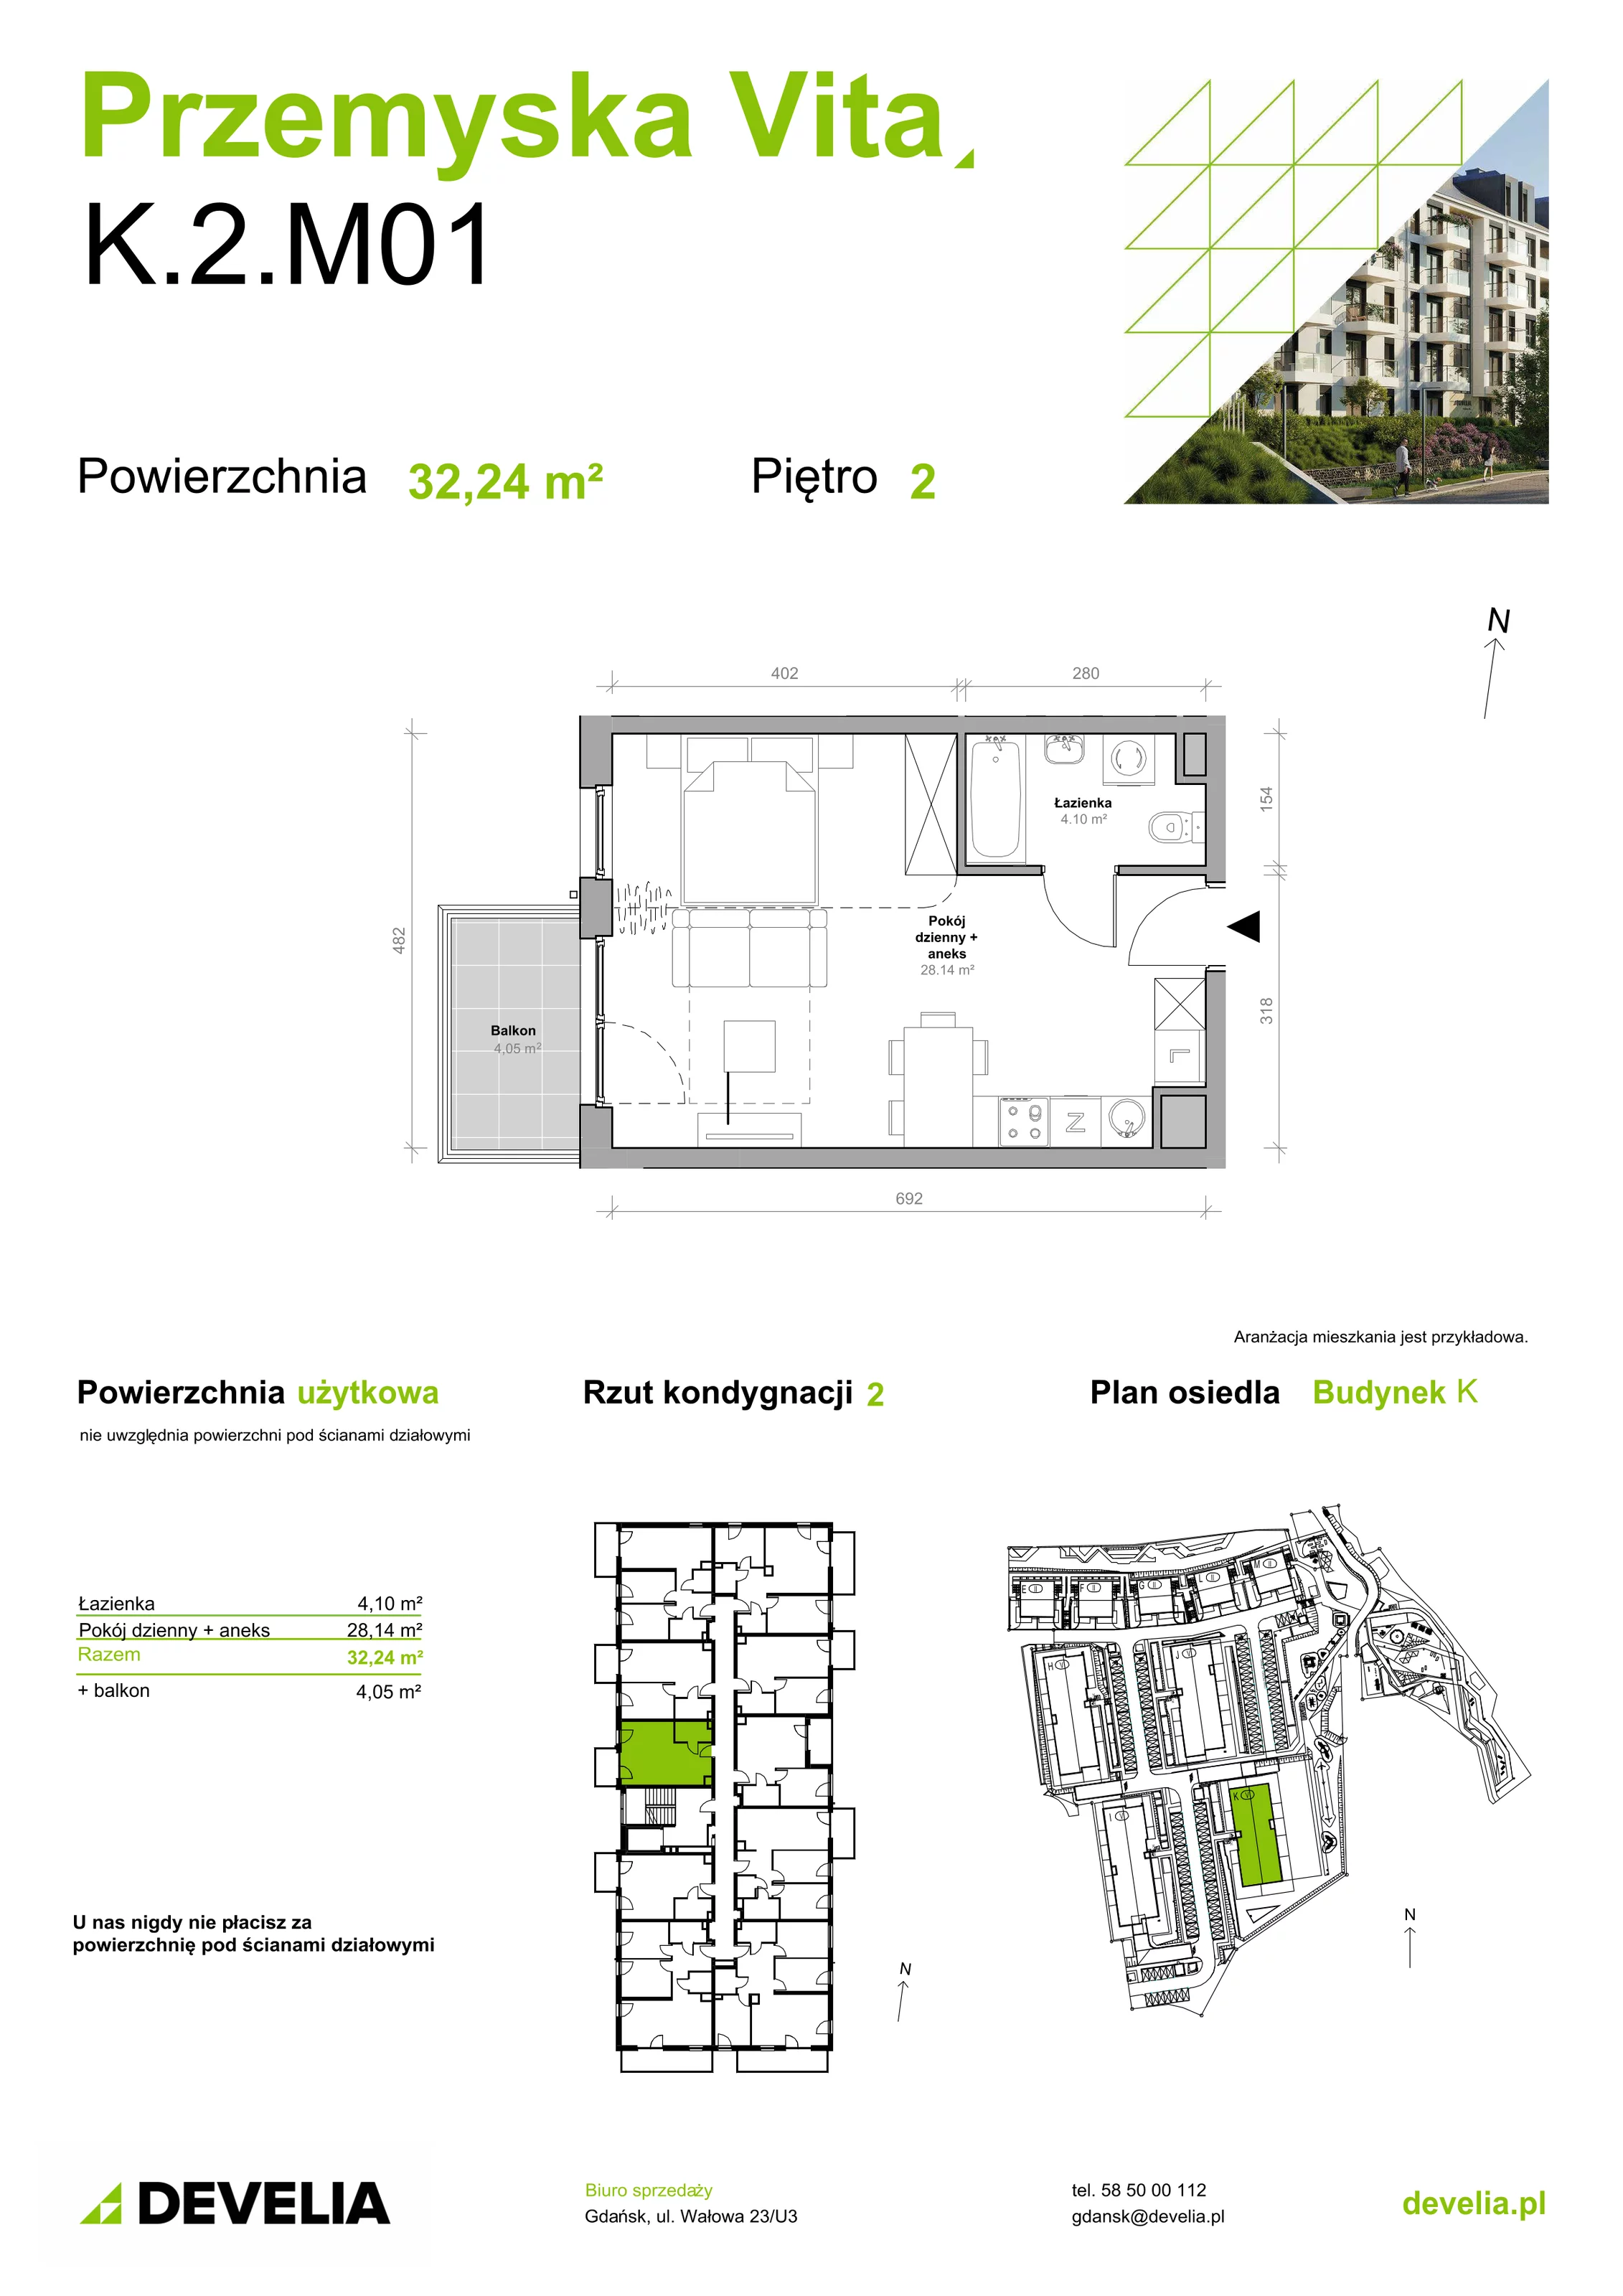 Mieszkanie 32,24 m², piętro 2, oferta nr K.2.M01, Przemyska Vita, Gdańsk, Ujeścisko-Łostowice, Ujeścisko, ul. Przemyska 37